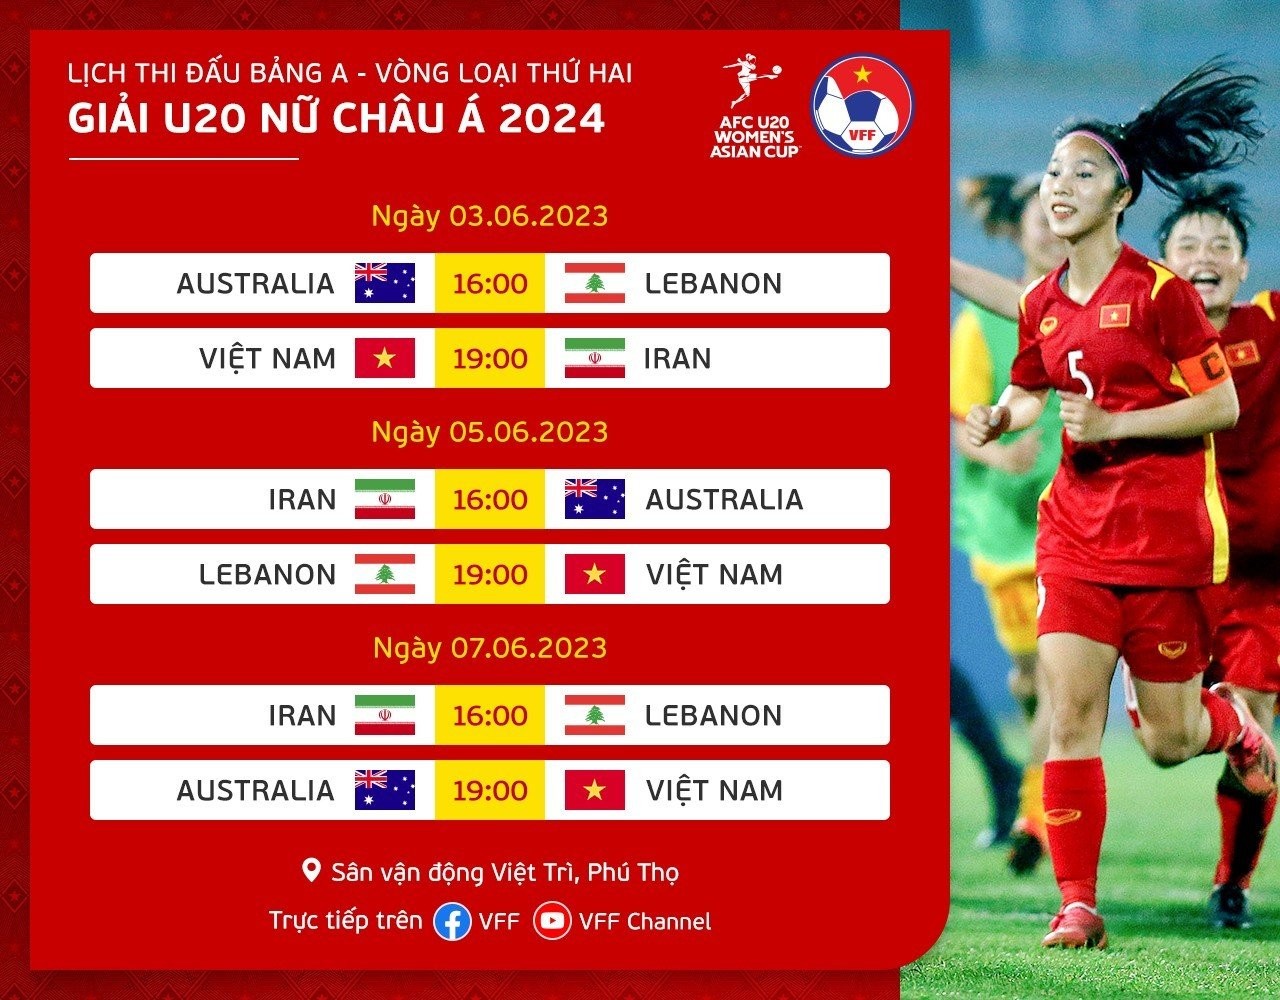 Lịch thi đấu của đội tuyển U20 nữ Việt Nam tại vòng loại thứ 2 U20 nữ châu Á 2024